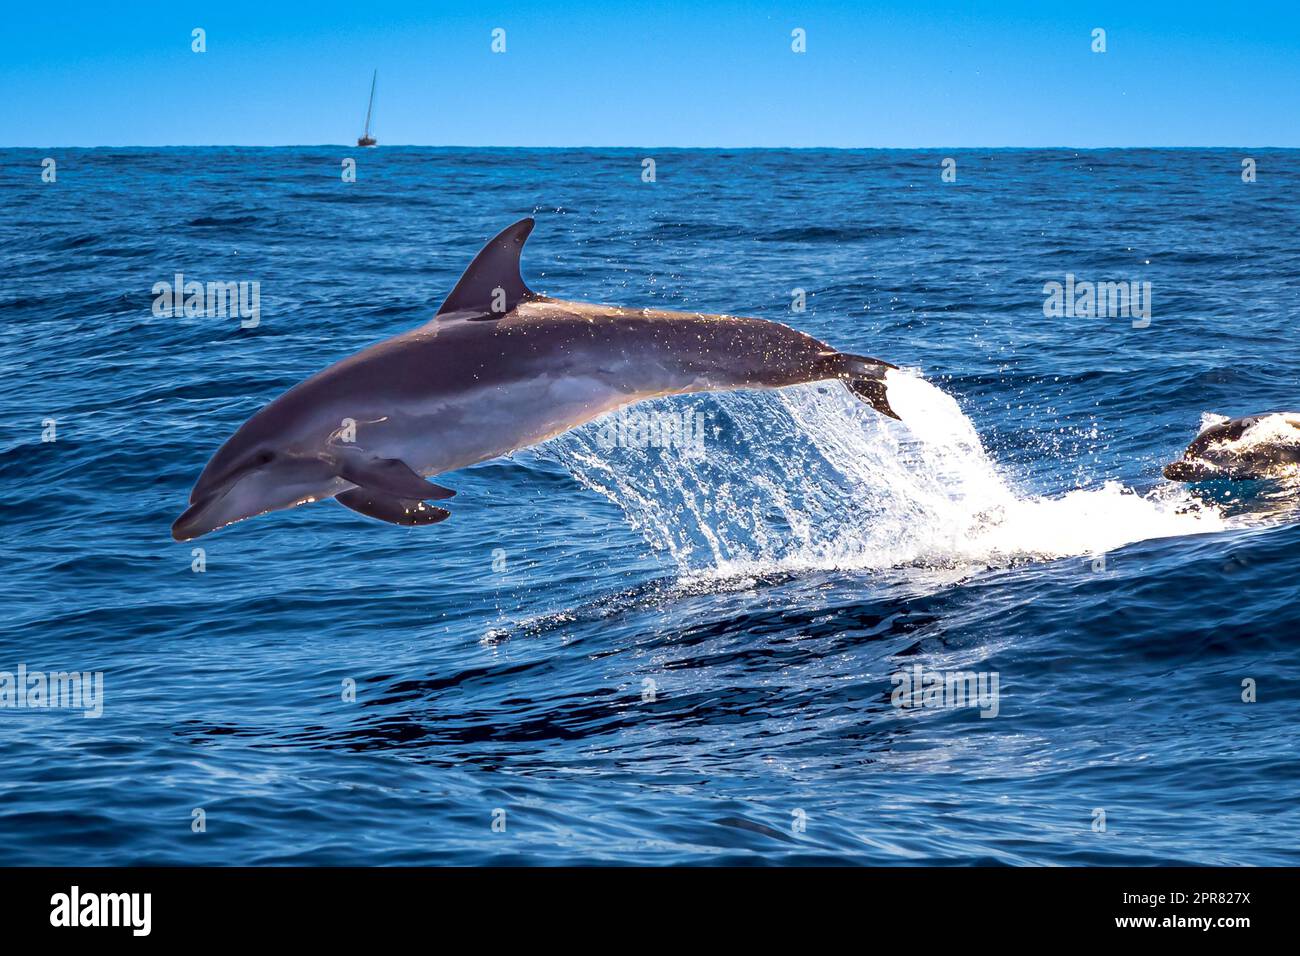 Les grands dauphins ont présenté un spectacle au lendemain d'un bateau, en bondissant et en barbotant sur les vagues de l'océan, offrant une scène à couper le souffle. Banque D'Images